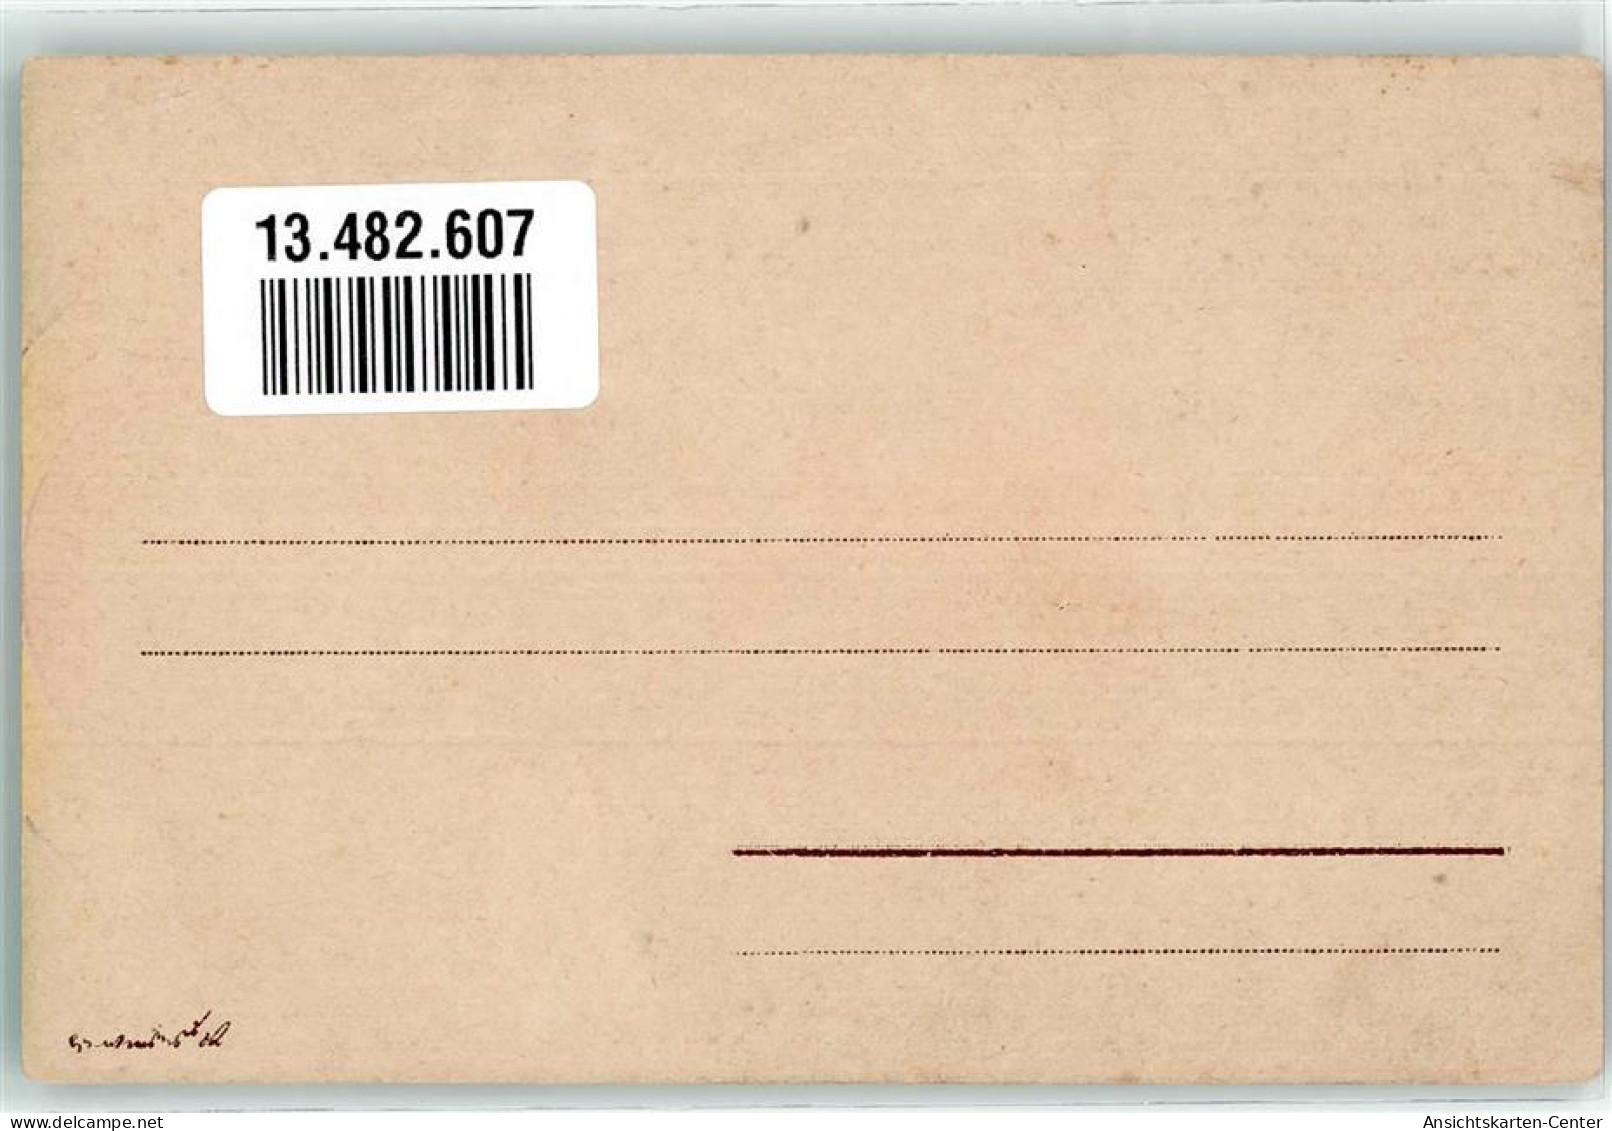 13482607 - Kuss Glueckwunsch Neujahr Storch - Postal Services